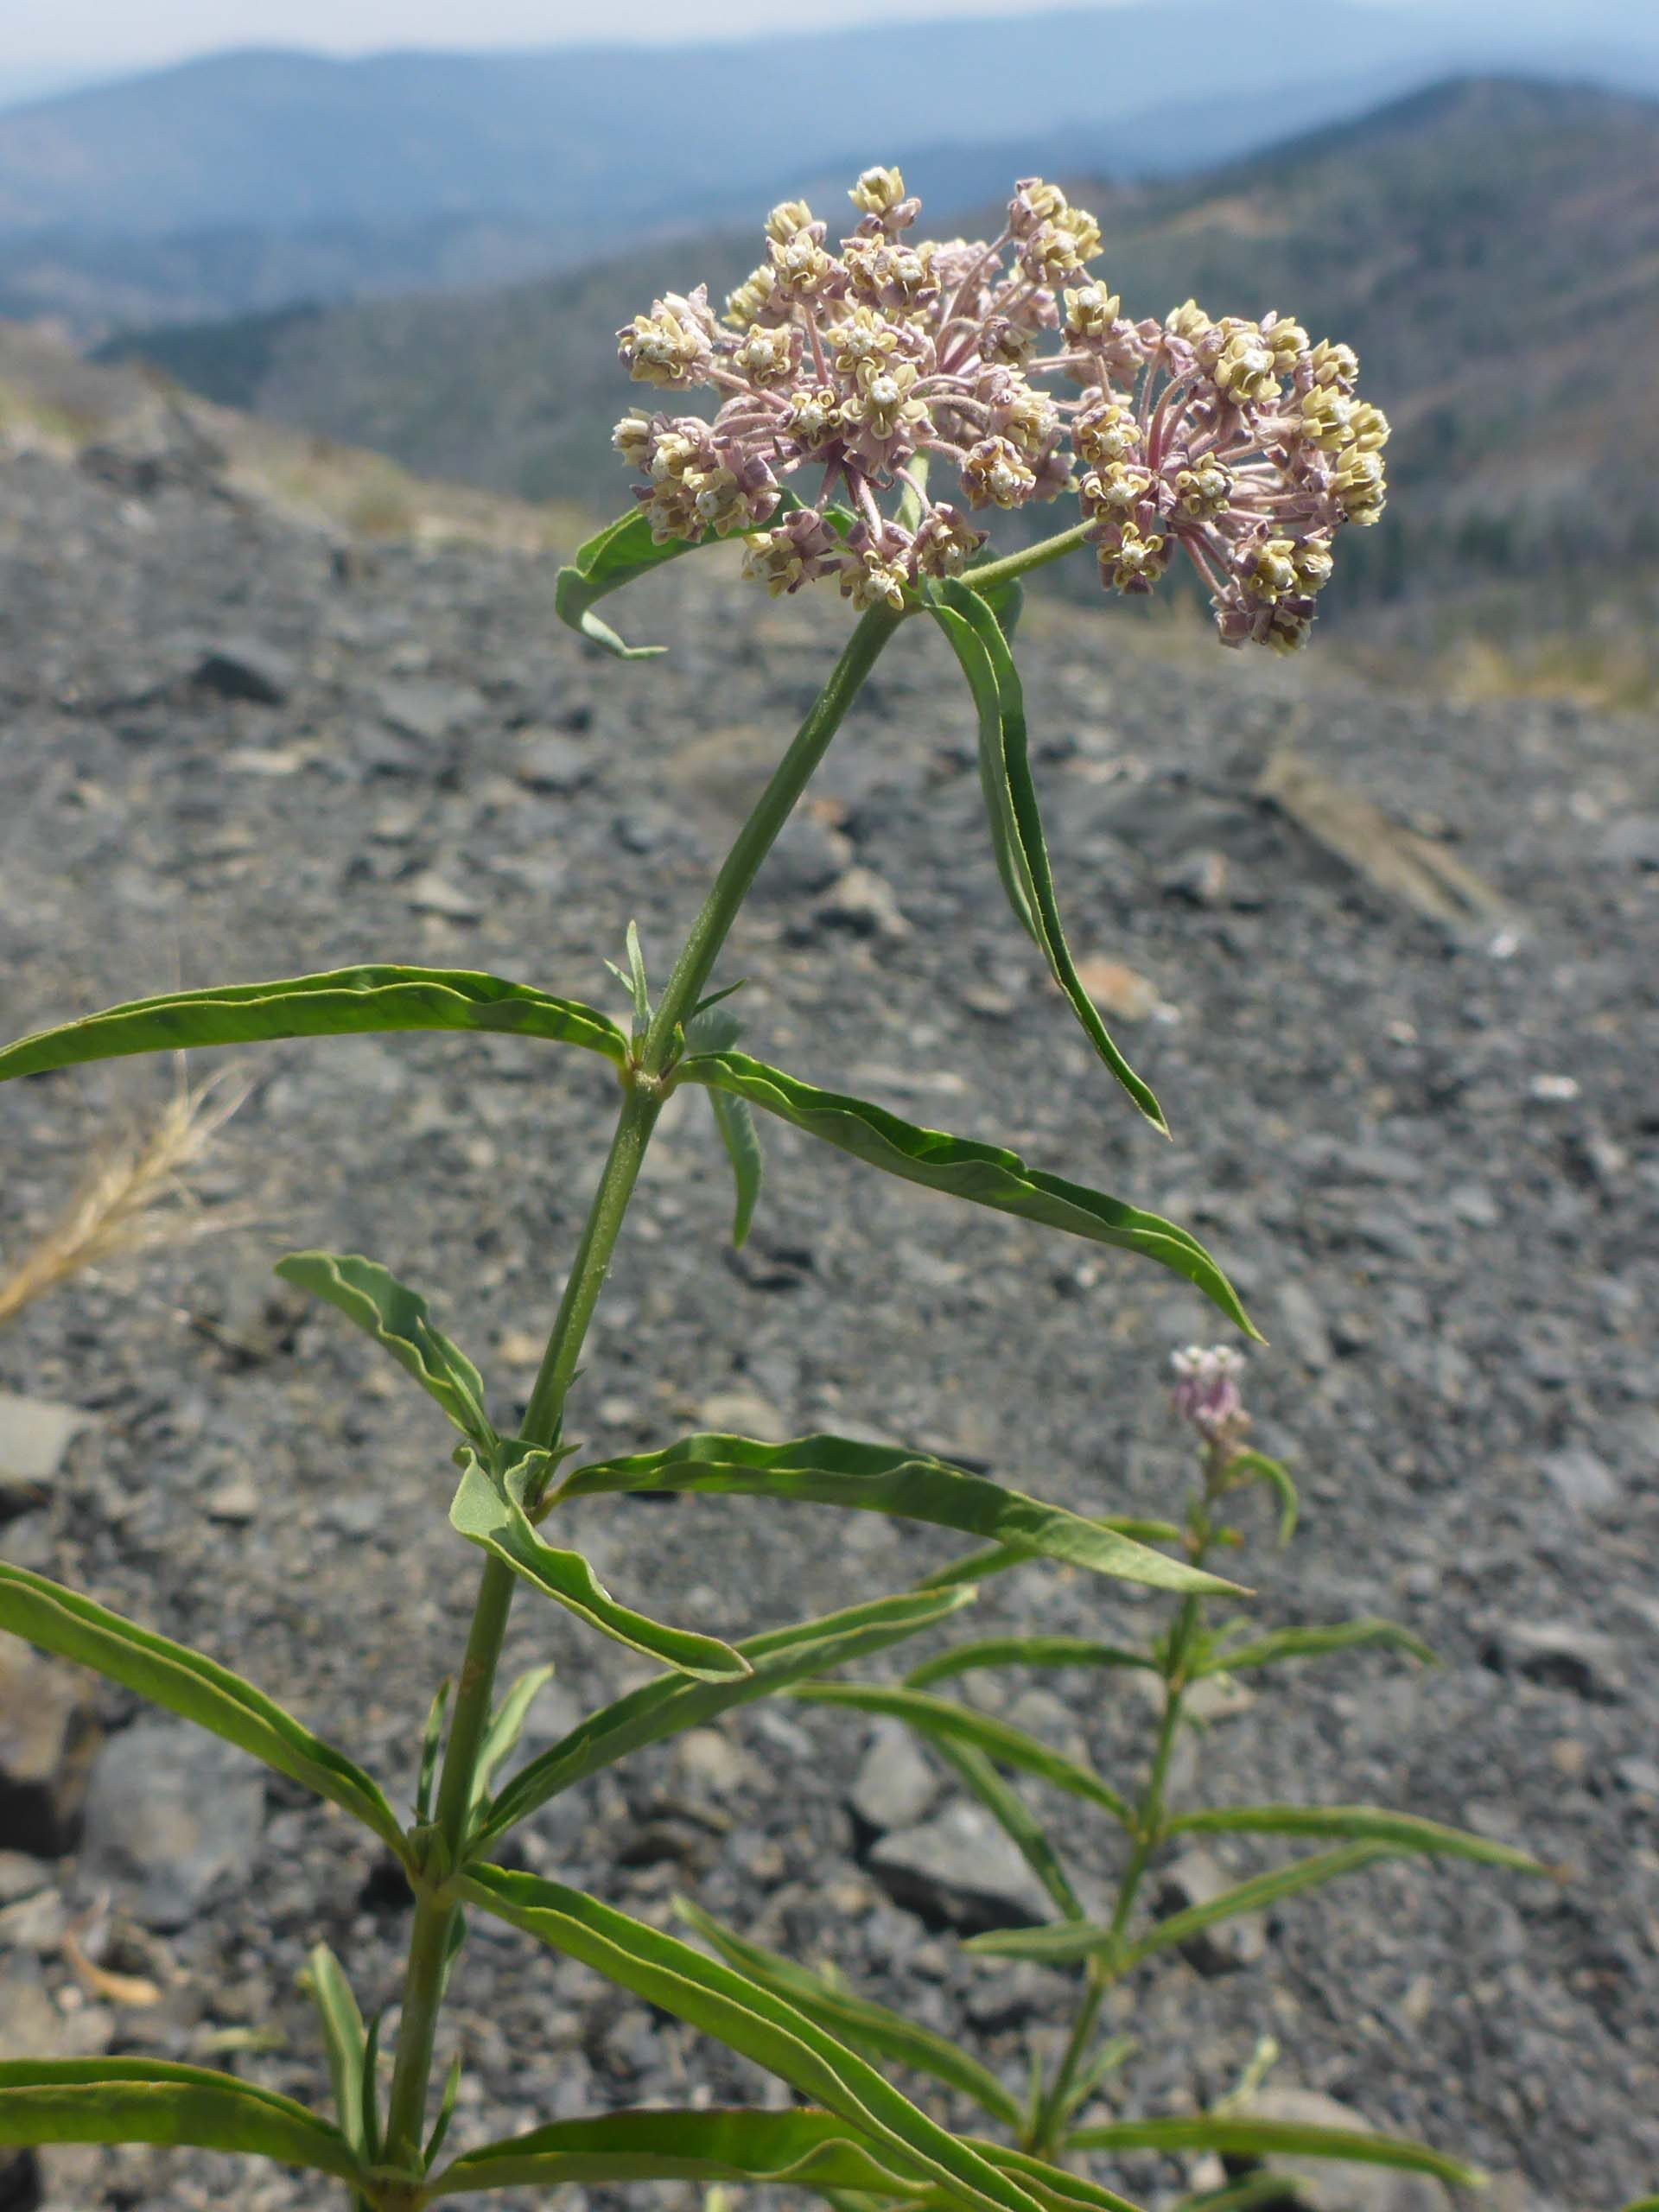 Narrow-leaved milkweed. D. Burk.